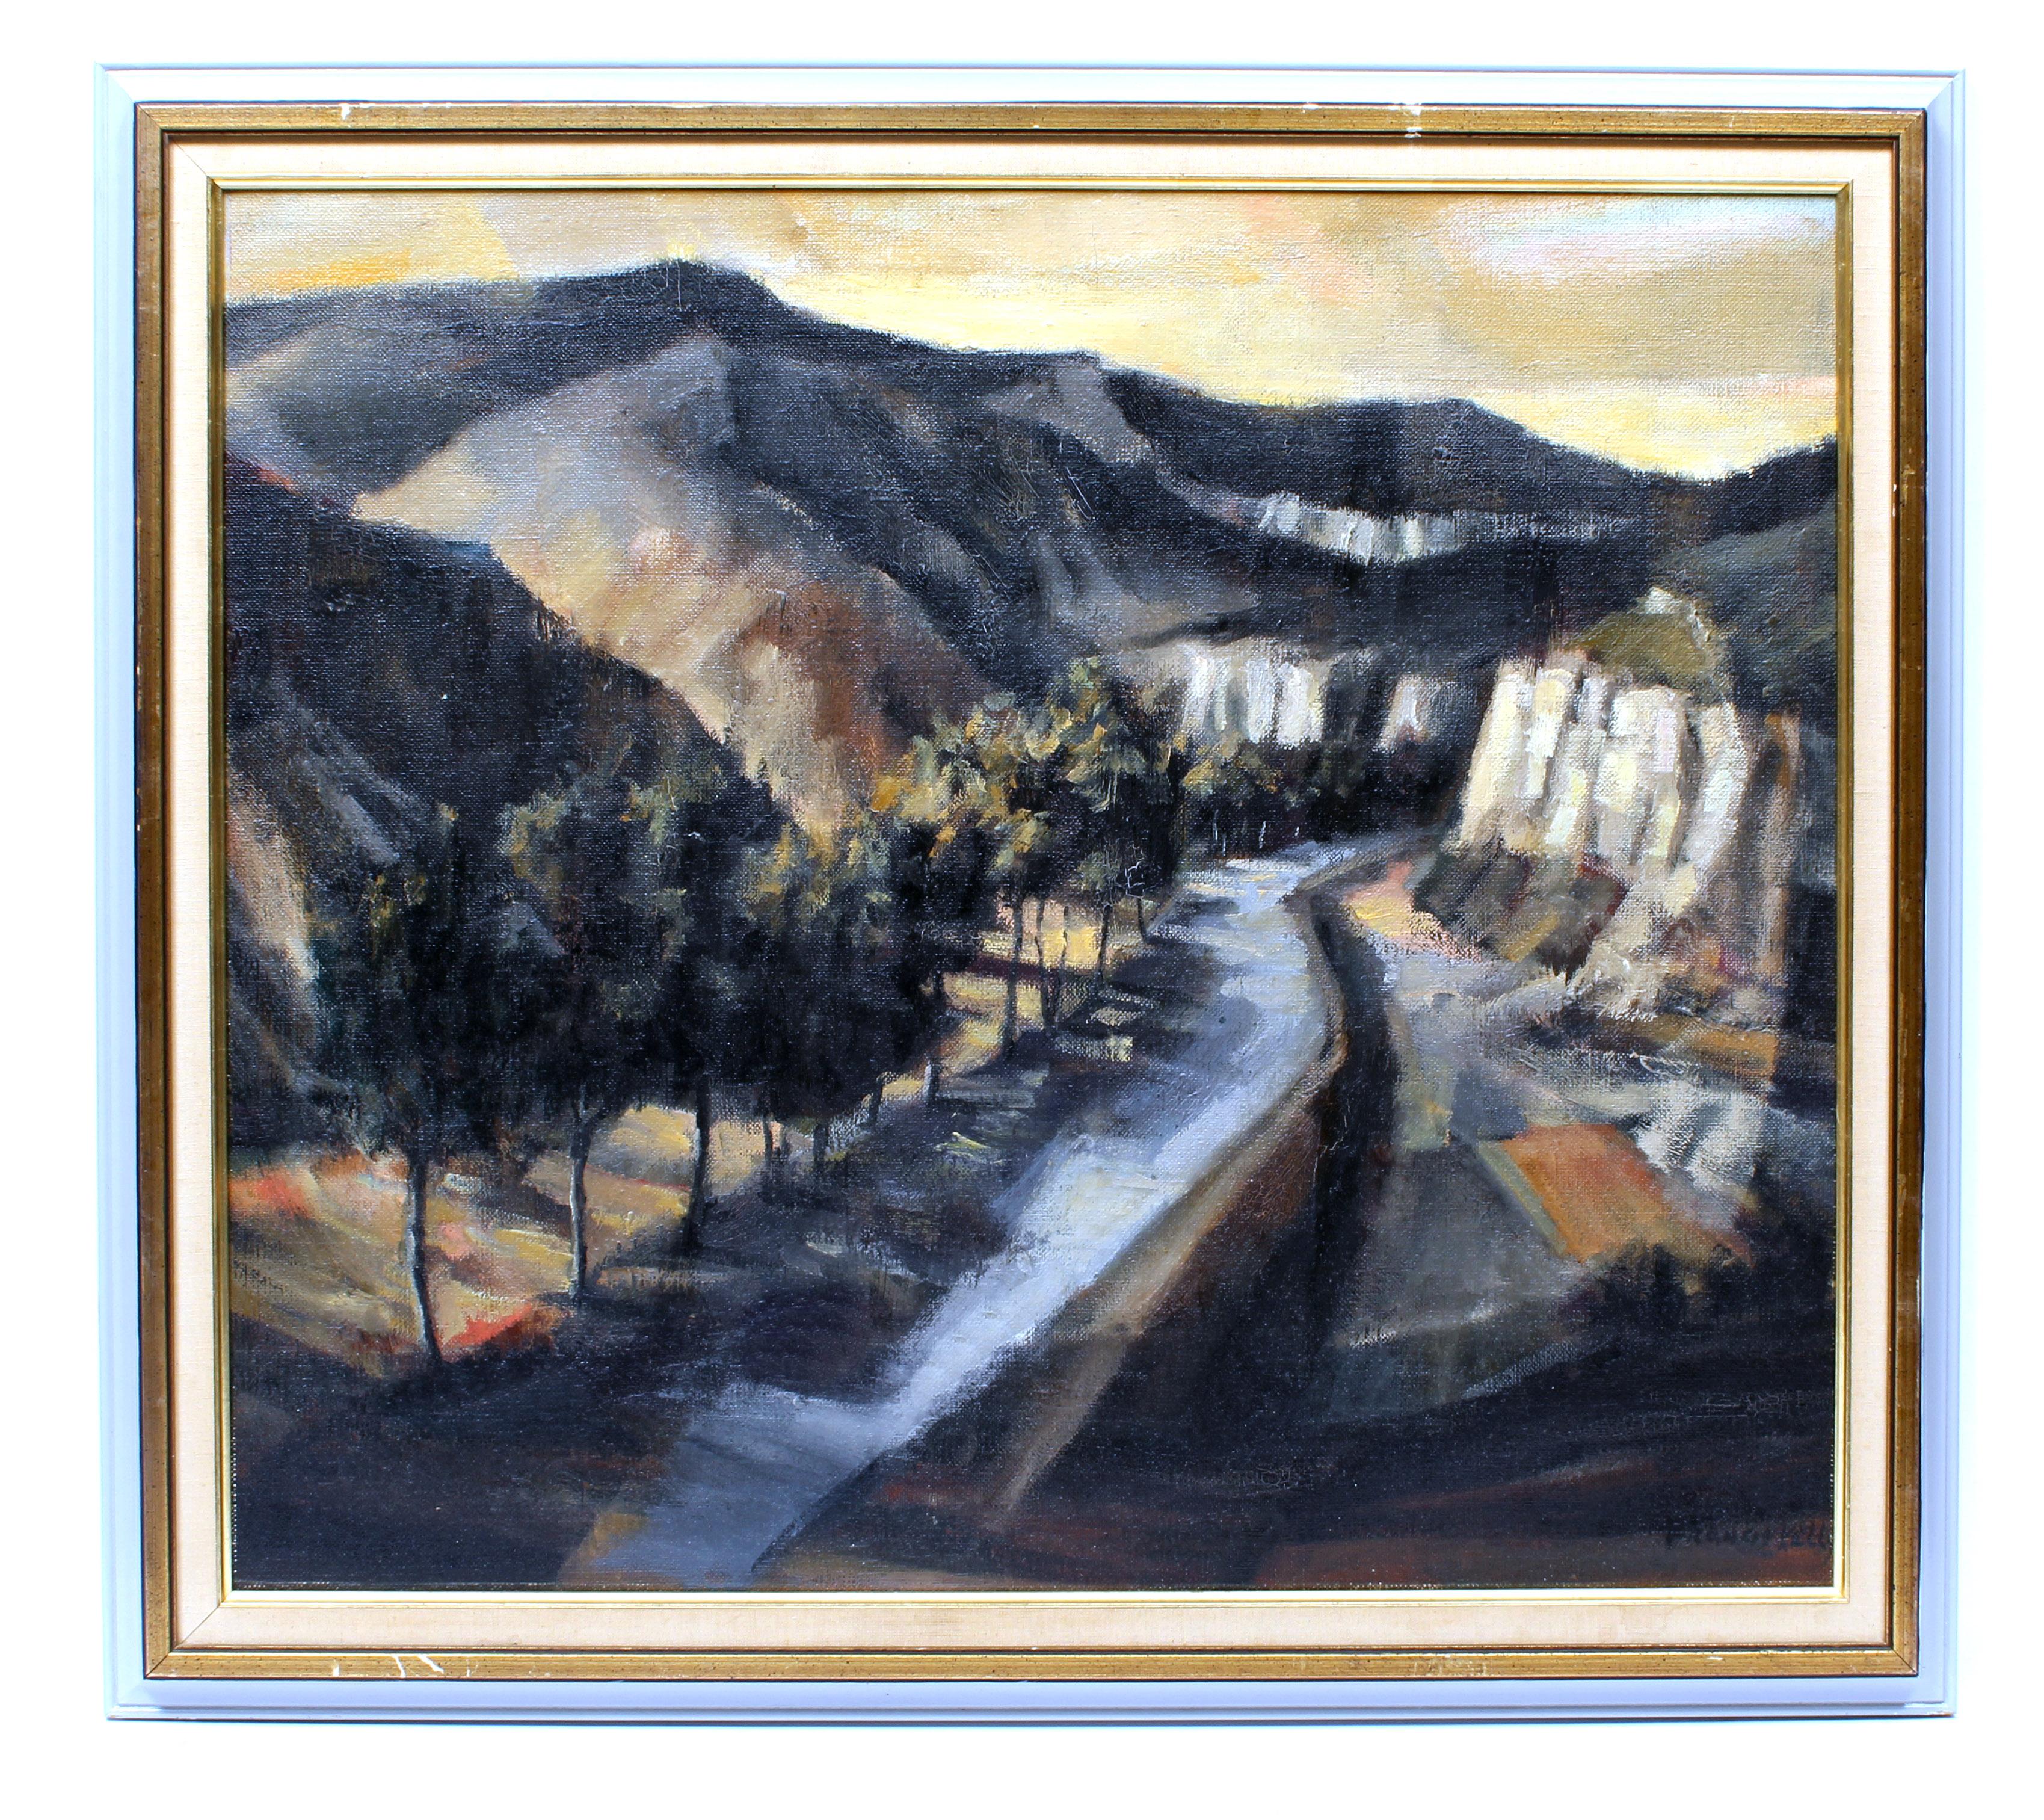 Peinture moderniste américaine de paysage de montagne encadrée, rare et rare, Tranquil de 1950 - Painting de Francis Kelly